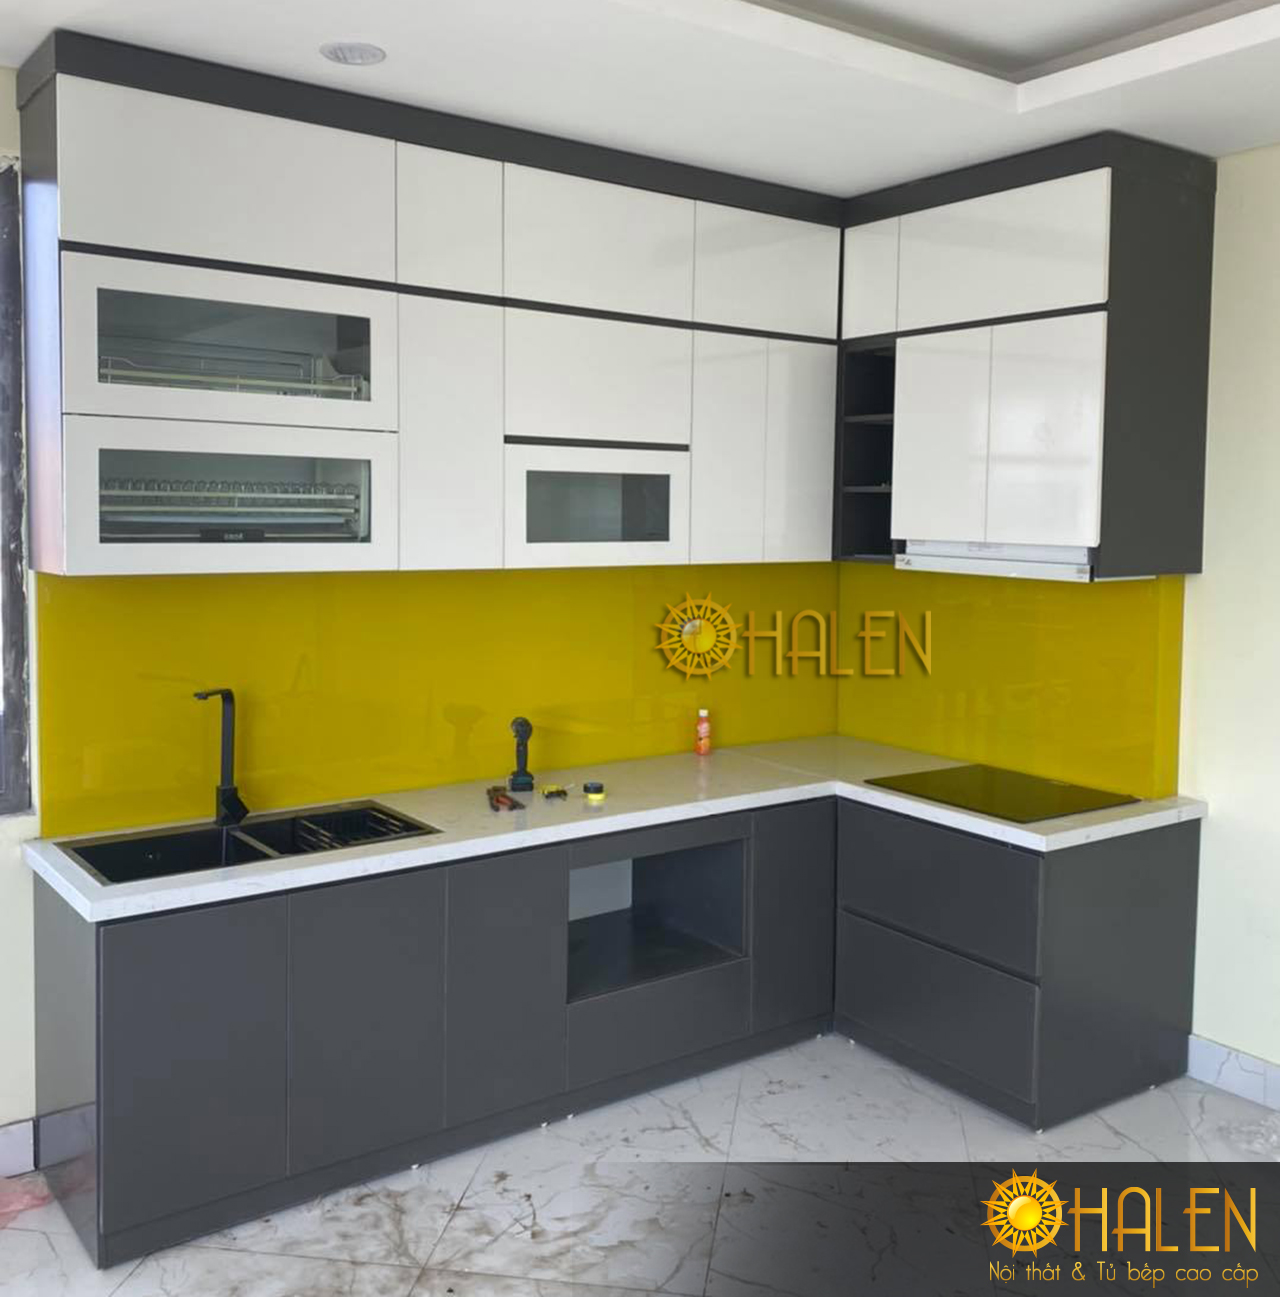 Nếu bạn muốn có một không gian bếp nổi bật thì có thể sử dụng kính bếp màu vàng chanh